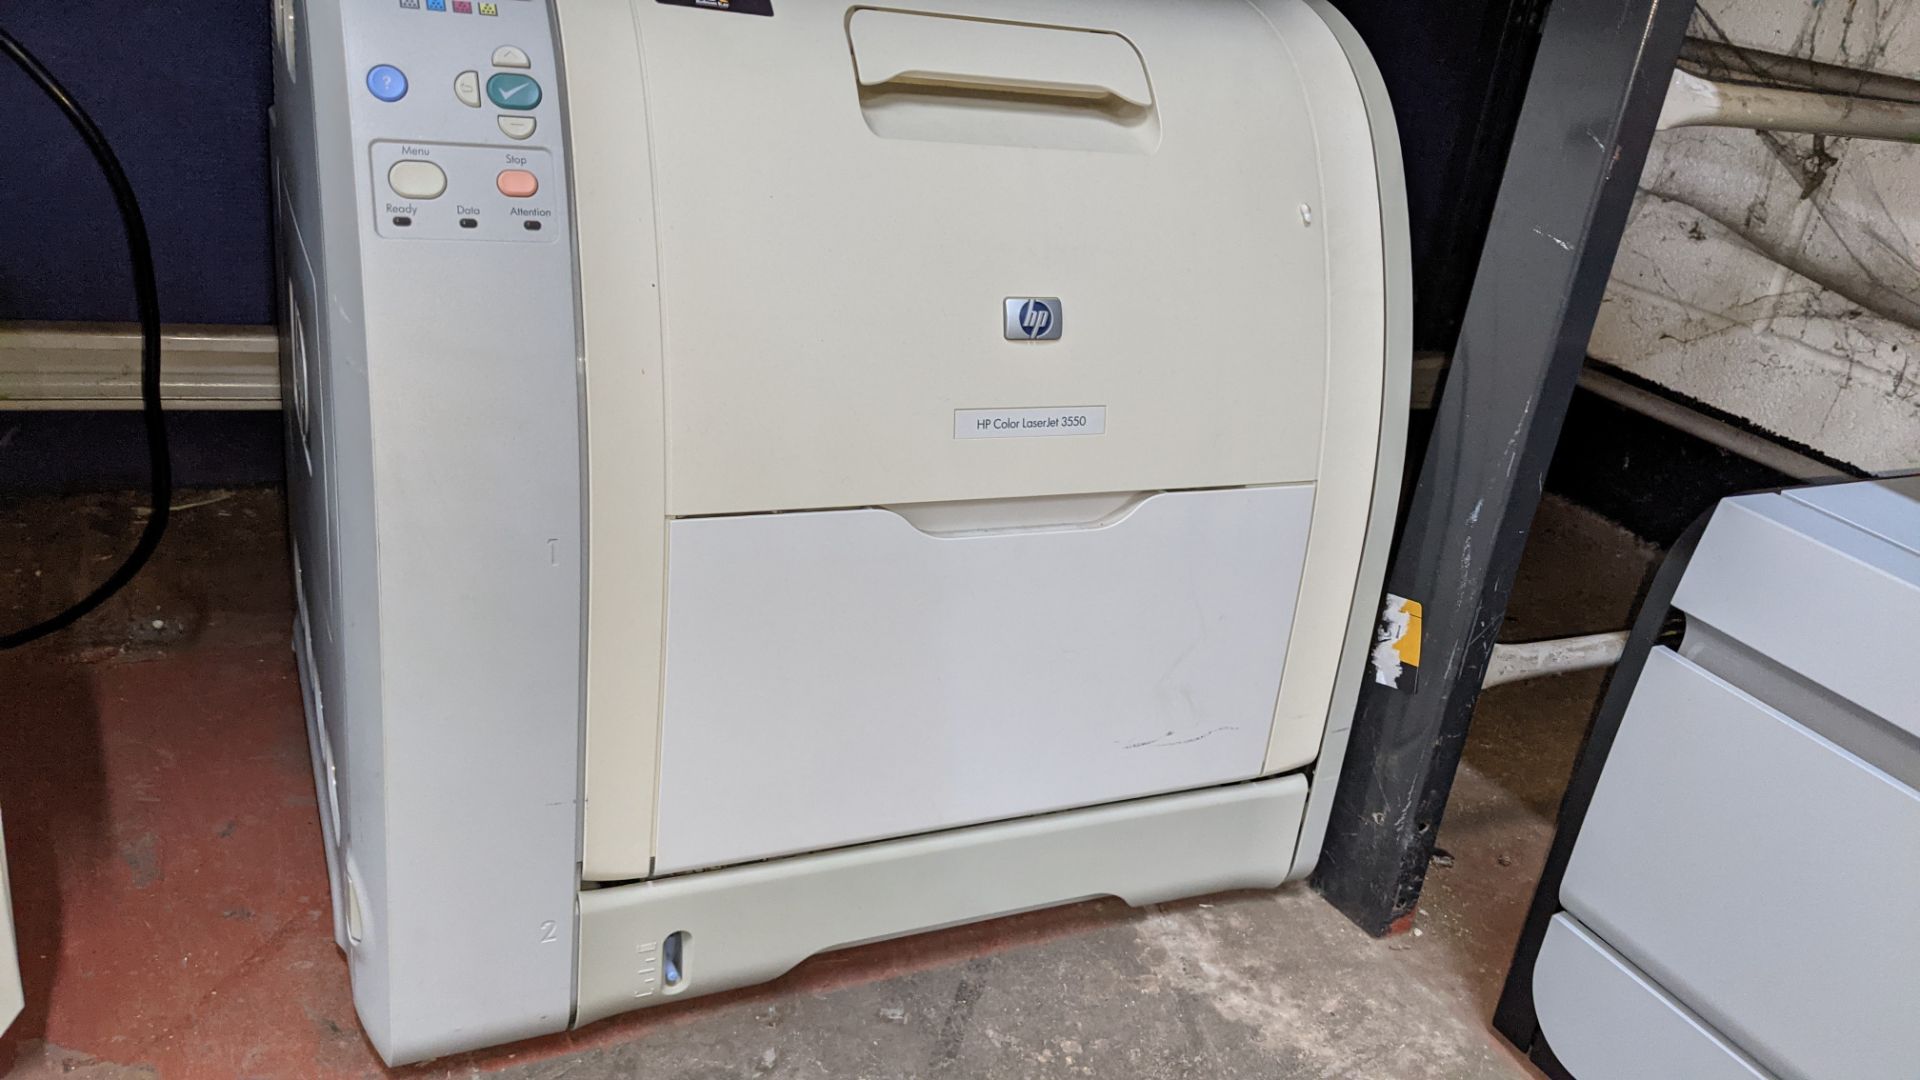 HP Color LaserJet 3550 printer - Image 4 of 6